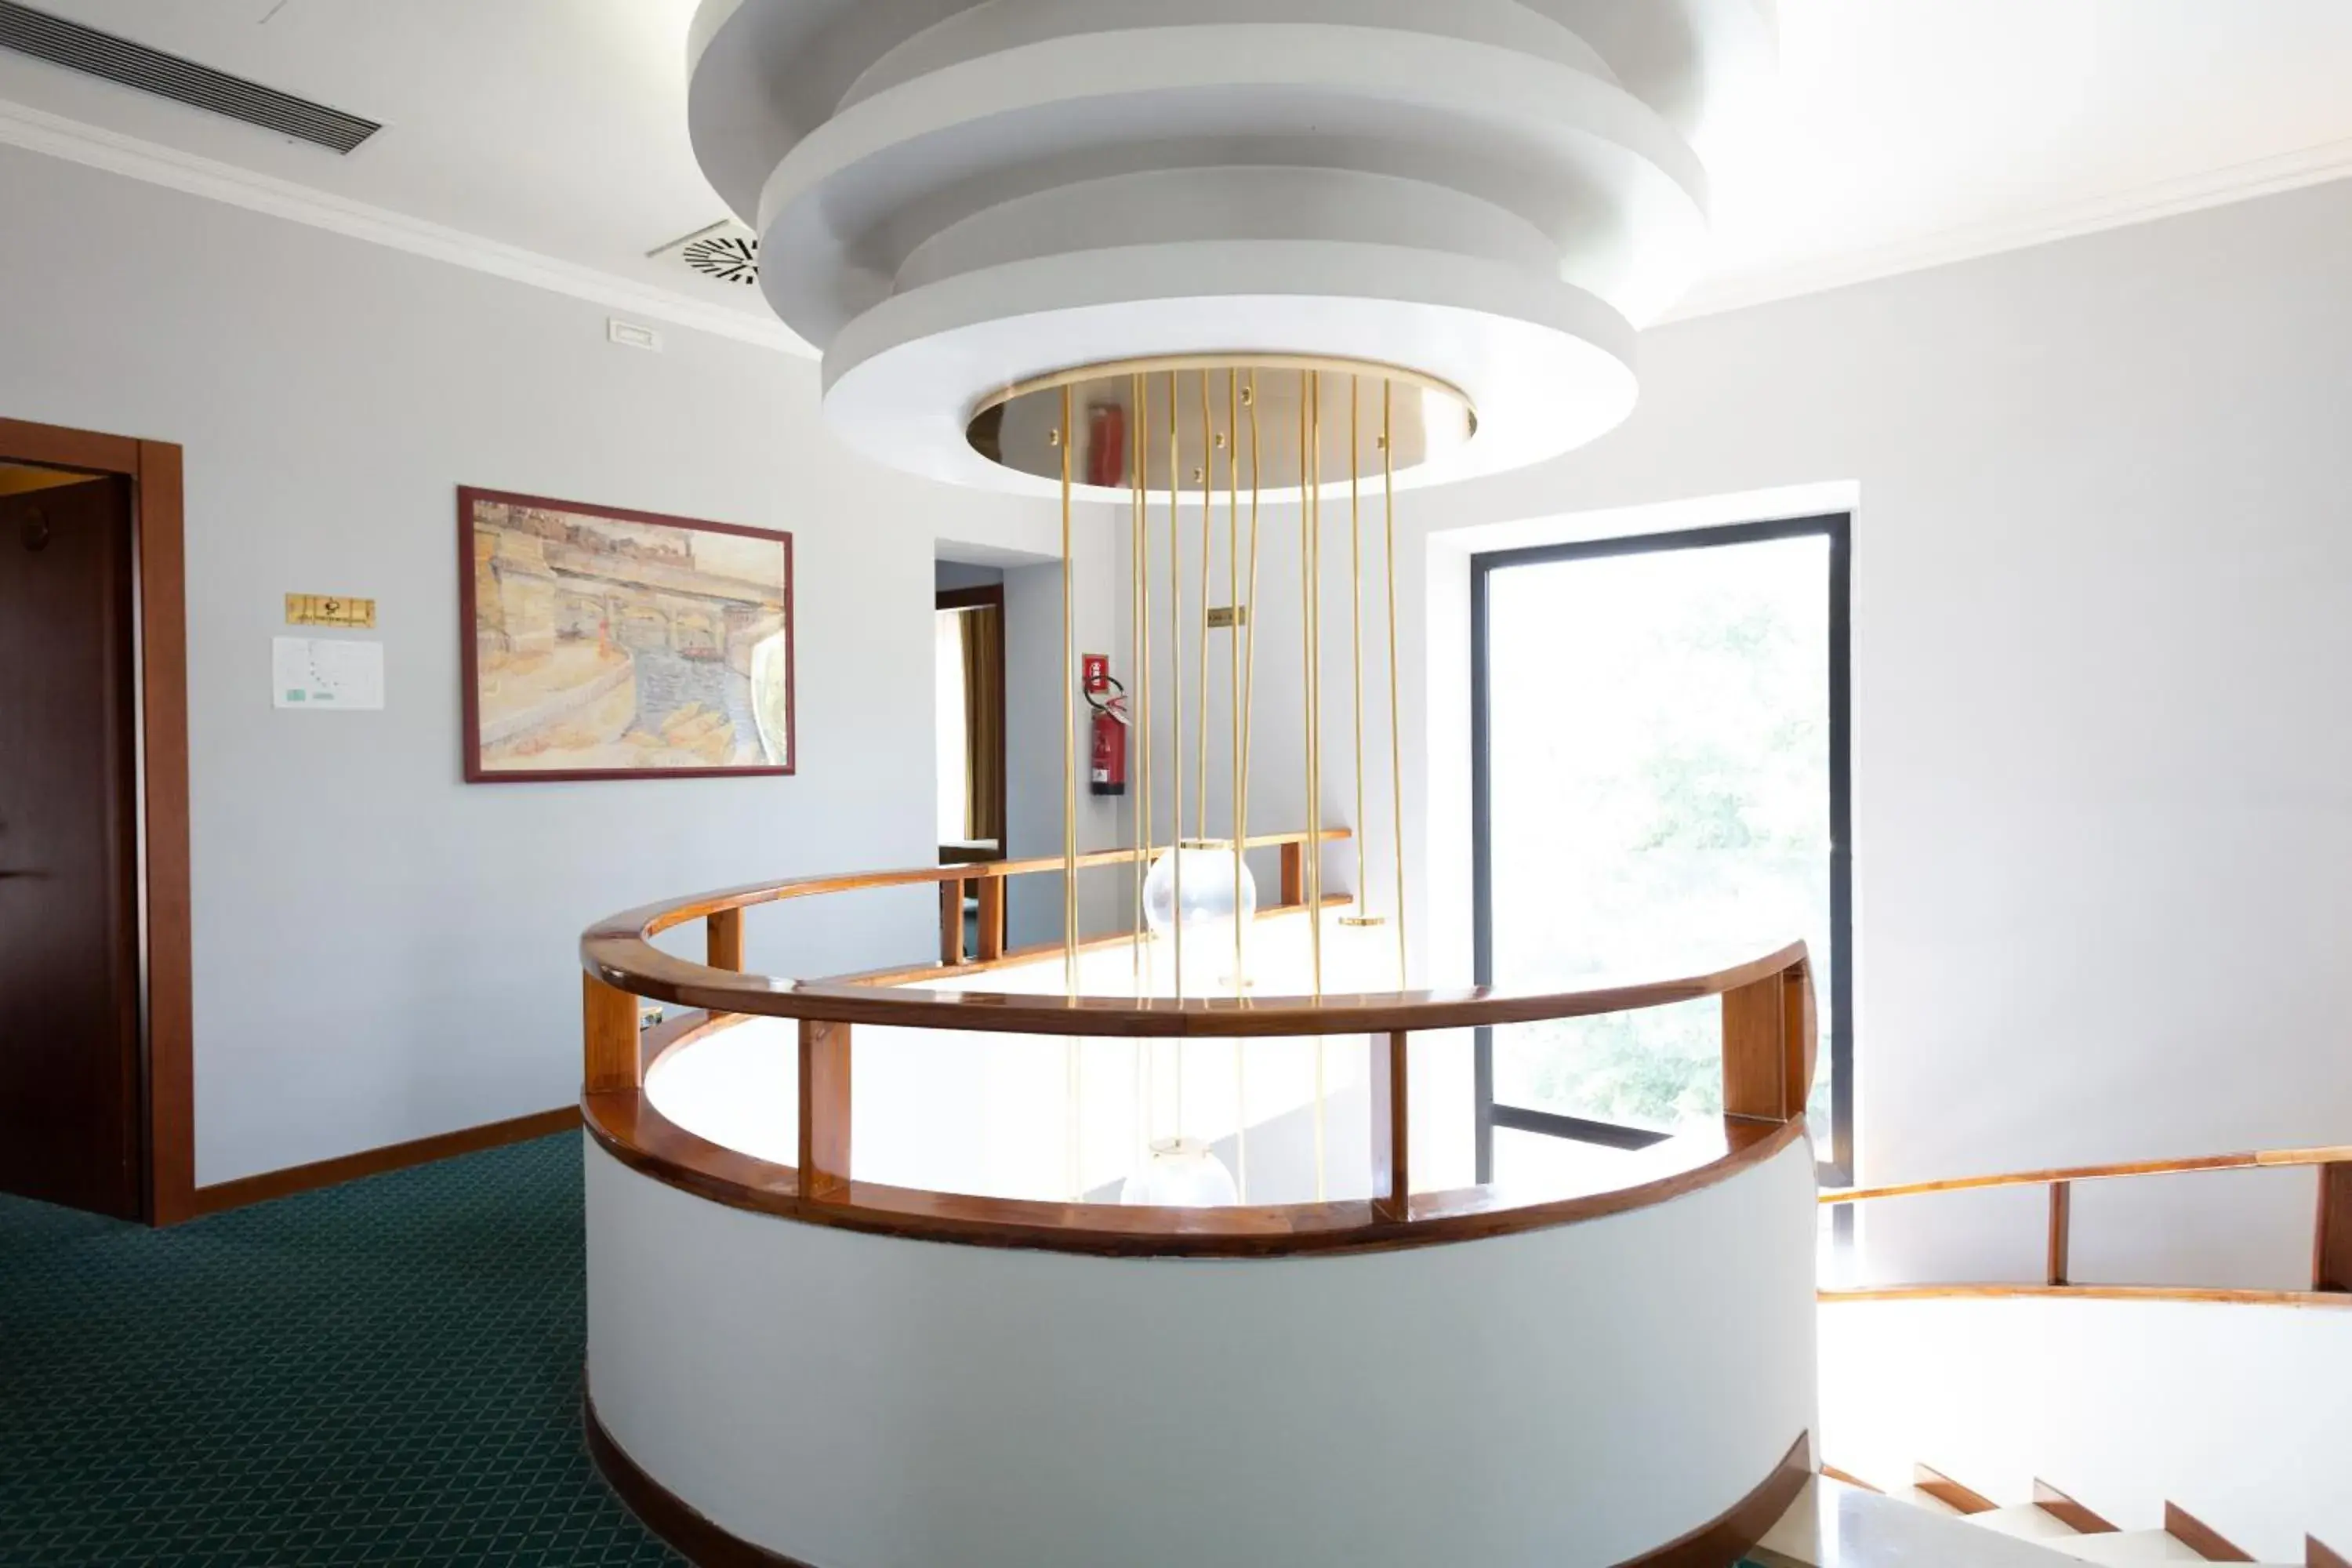 Lobby or reception in Cervara Park Hotel